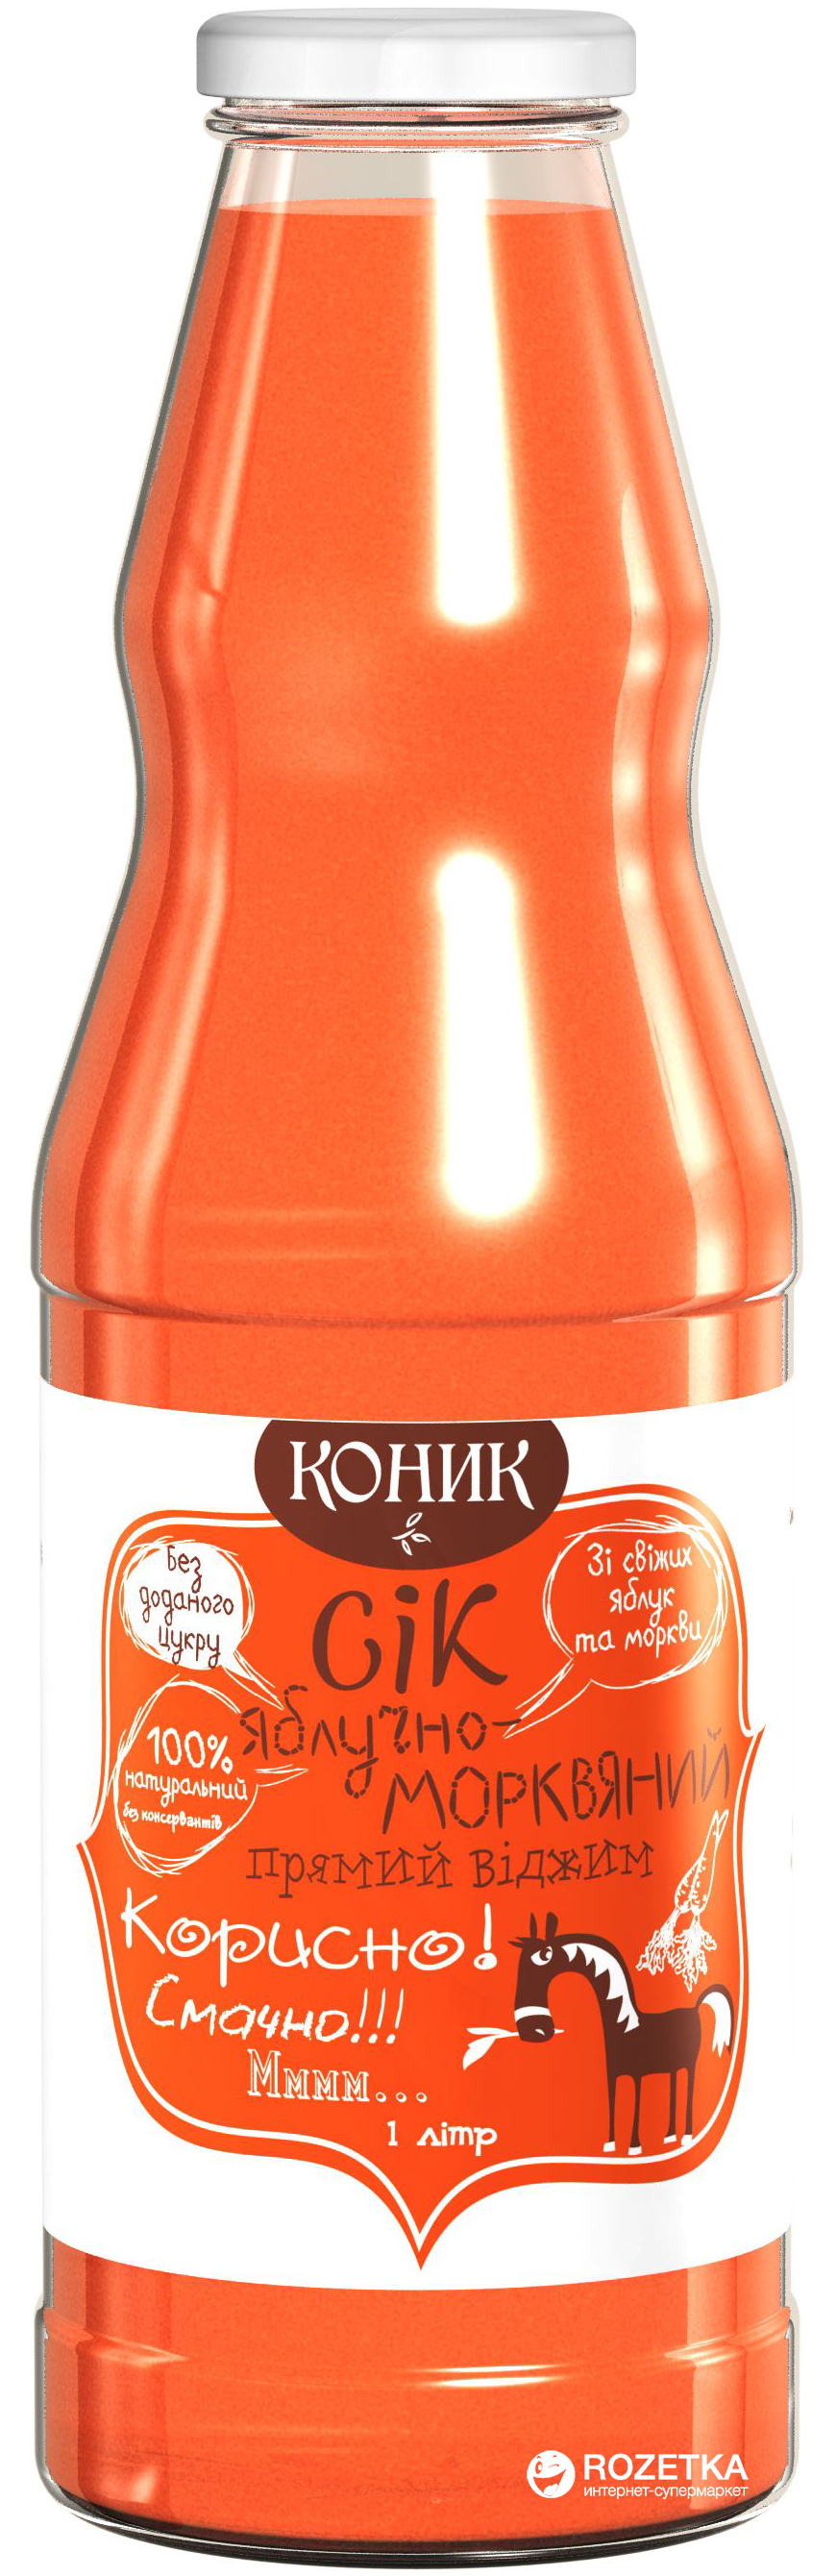 Акция на Упаковка сока Коник Яблочно-морковный 1 л х 6 шт (4820157450413) от Rozetka UA